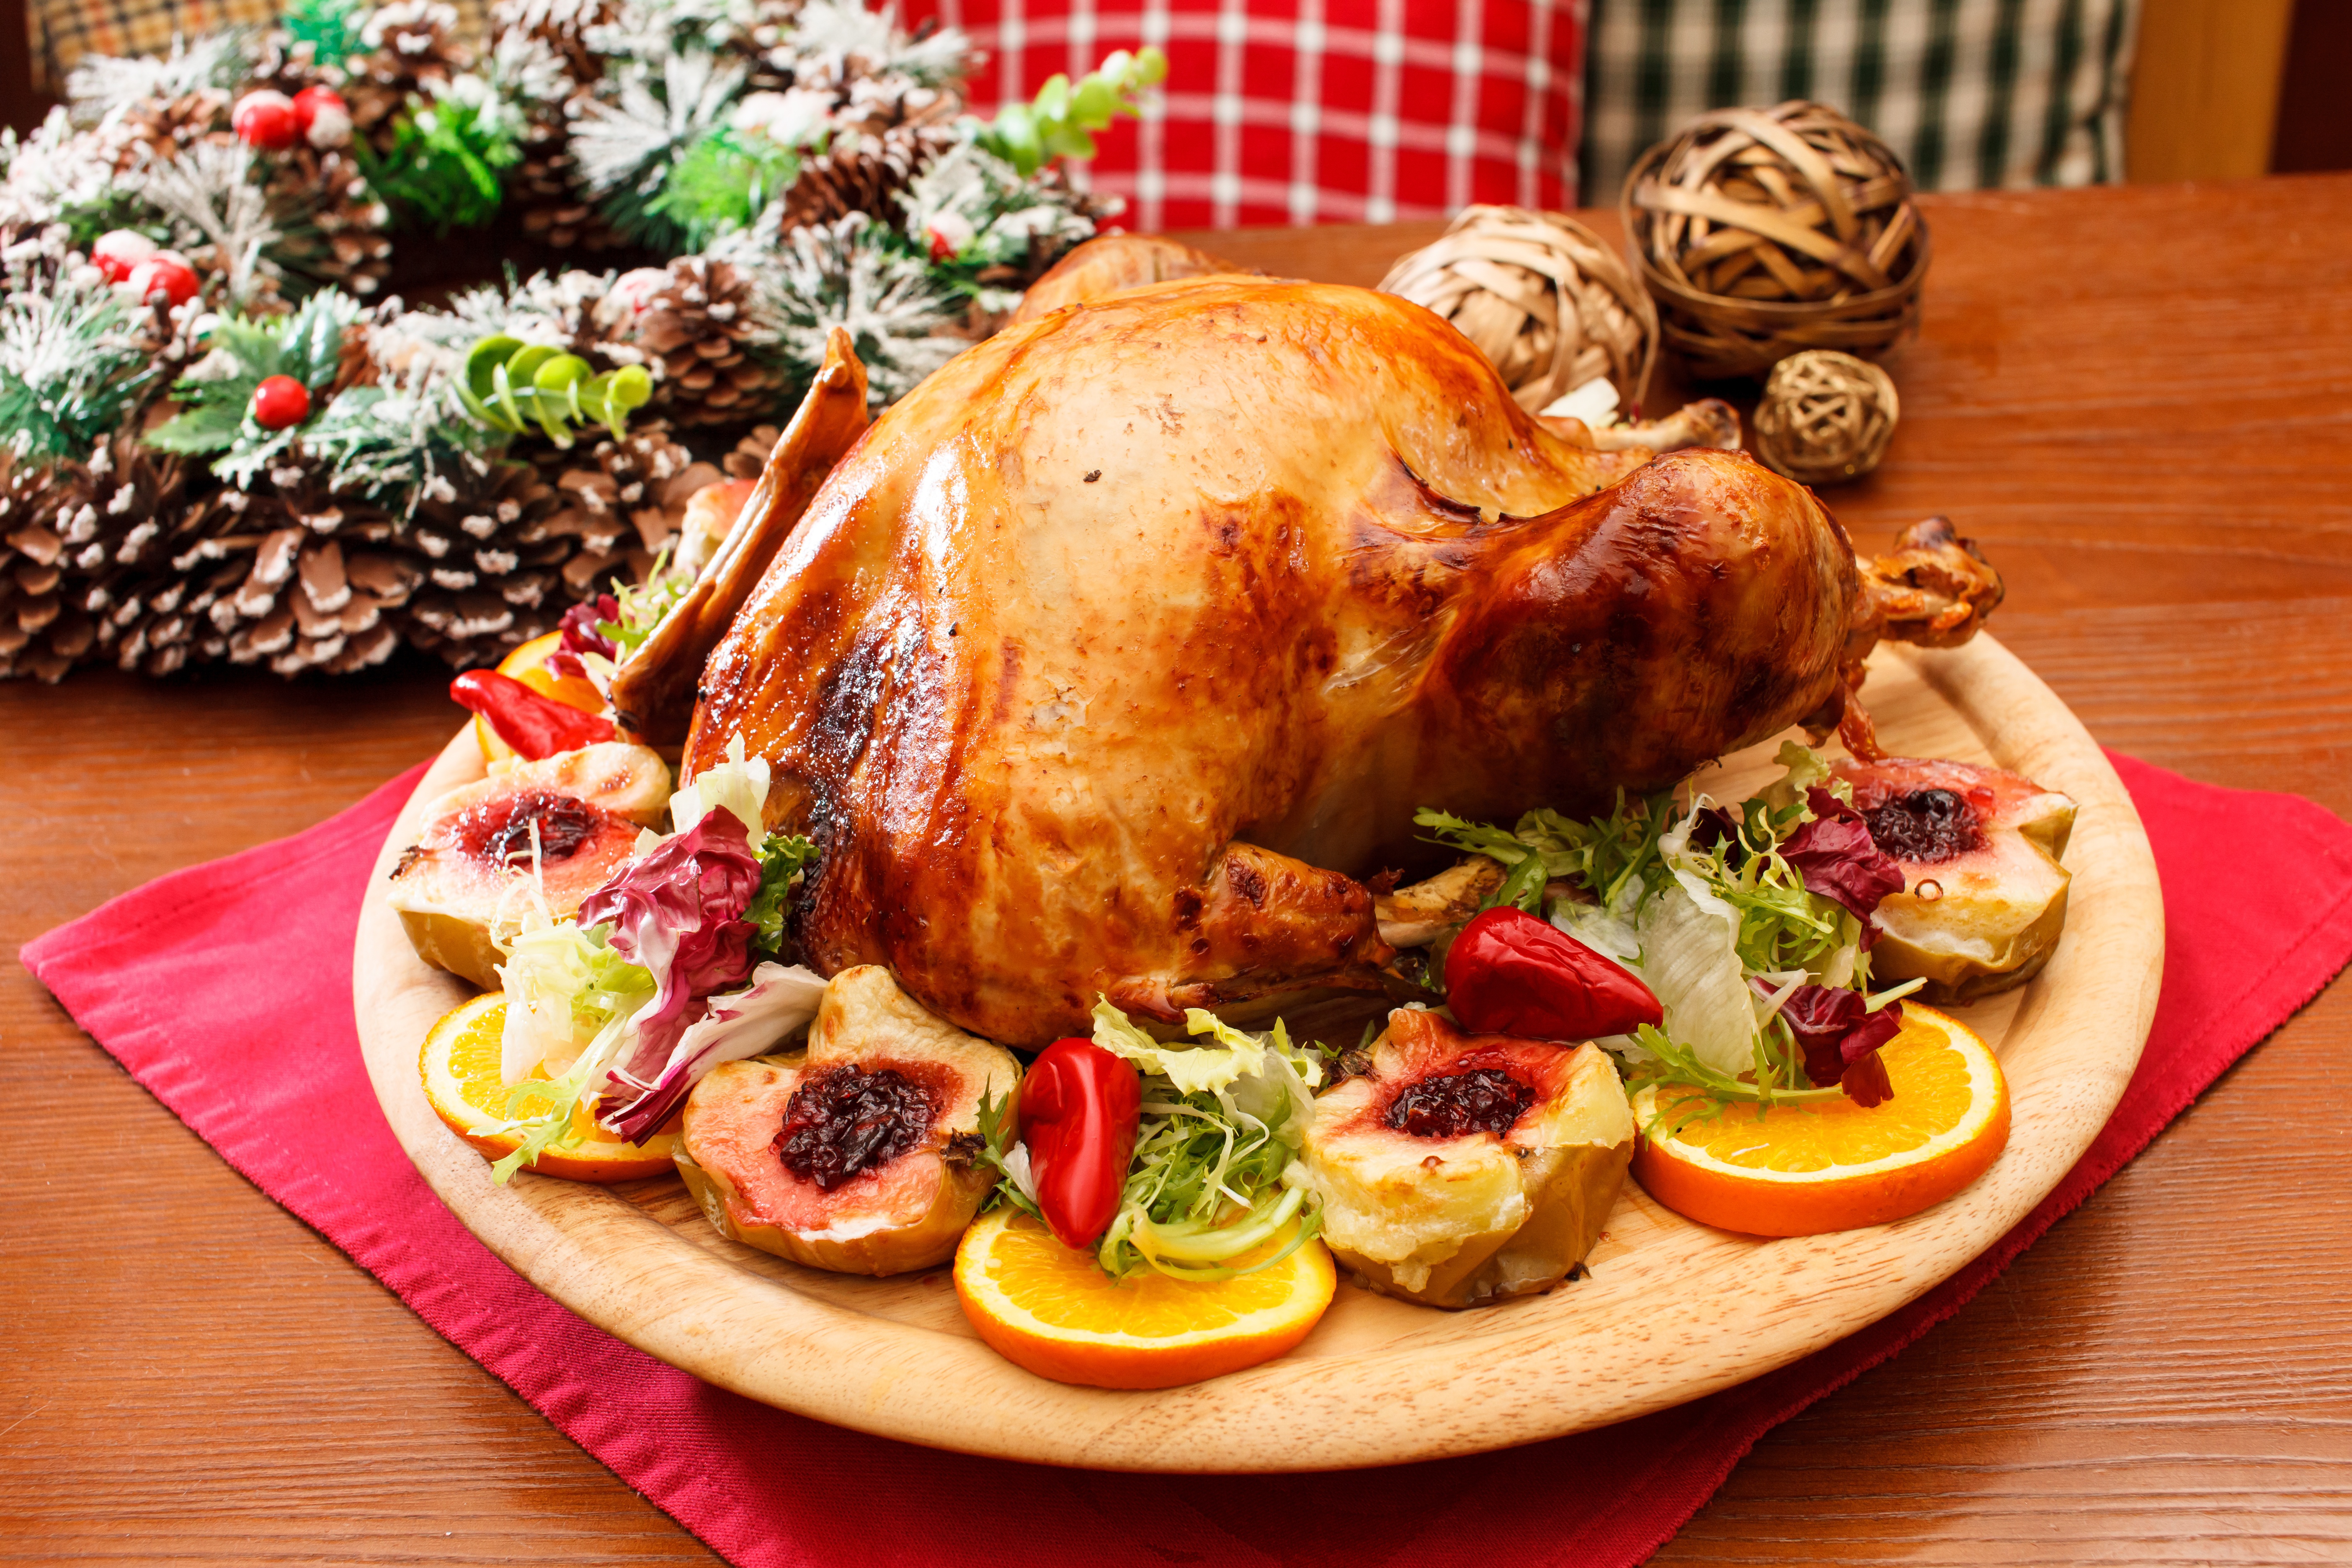 Now индейка. . Рождественская индейка (Christmas Turkey) Ингредиенты. Рождествейнская Идейка. Запеченная индейка на Рождество. Курица на новогодний стол.